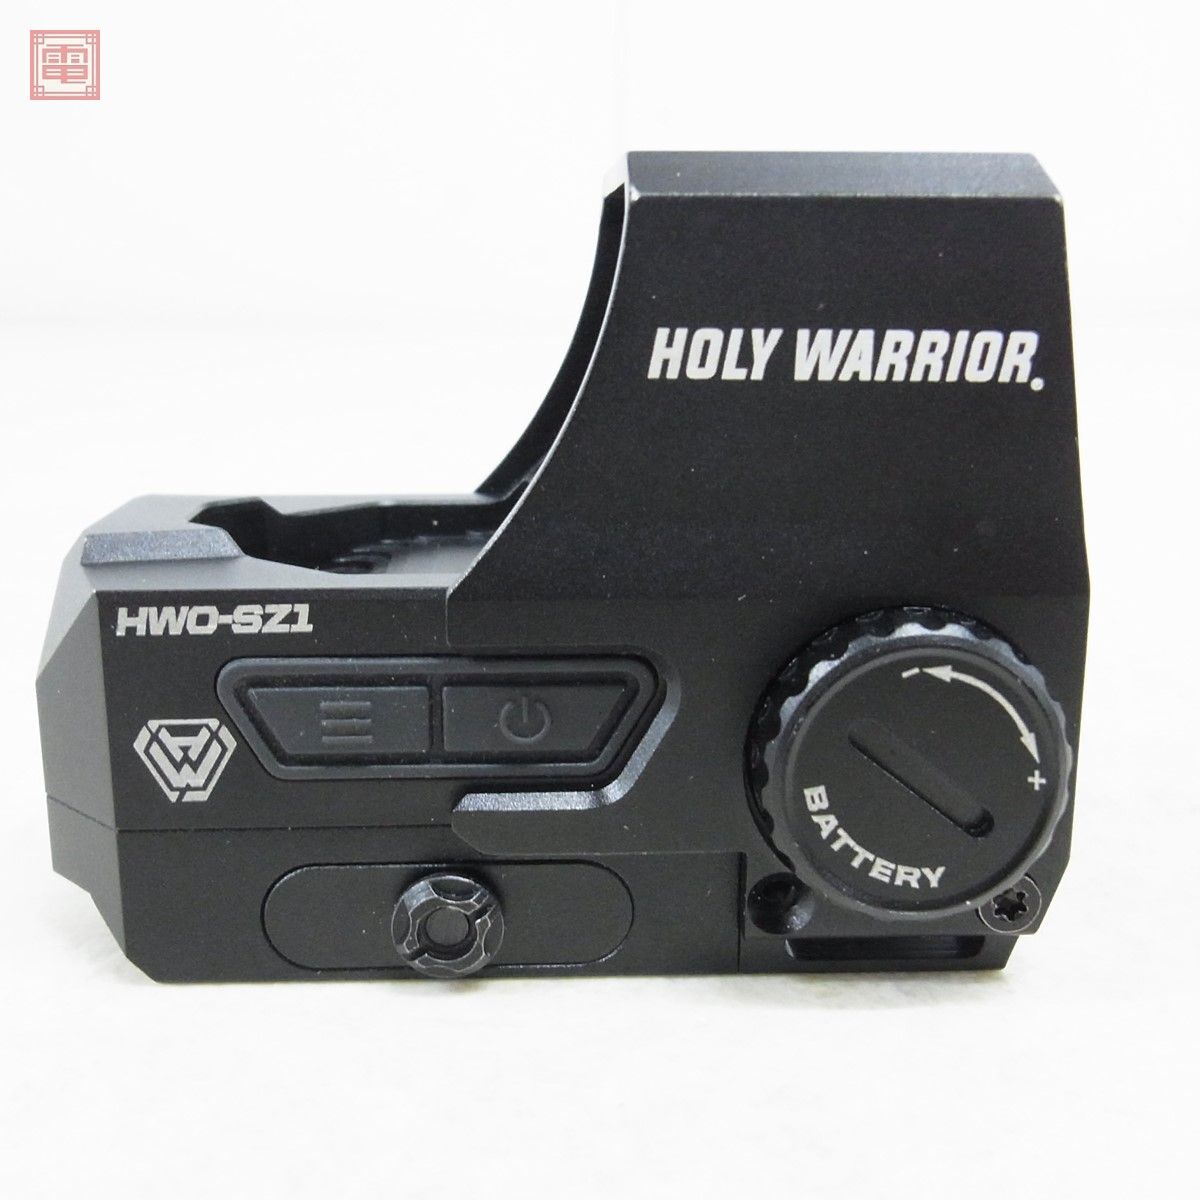 Holy Warrior цифровой точка сайт HWO-SZ1 многофункциональный тент сайт мульти- retikru Gyro scope compass датчик температуры [10